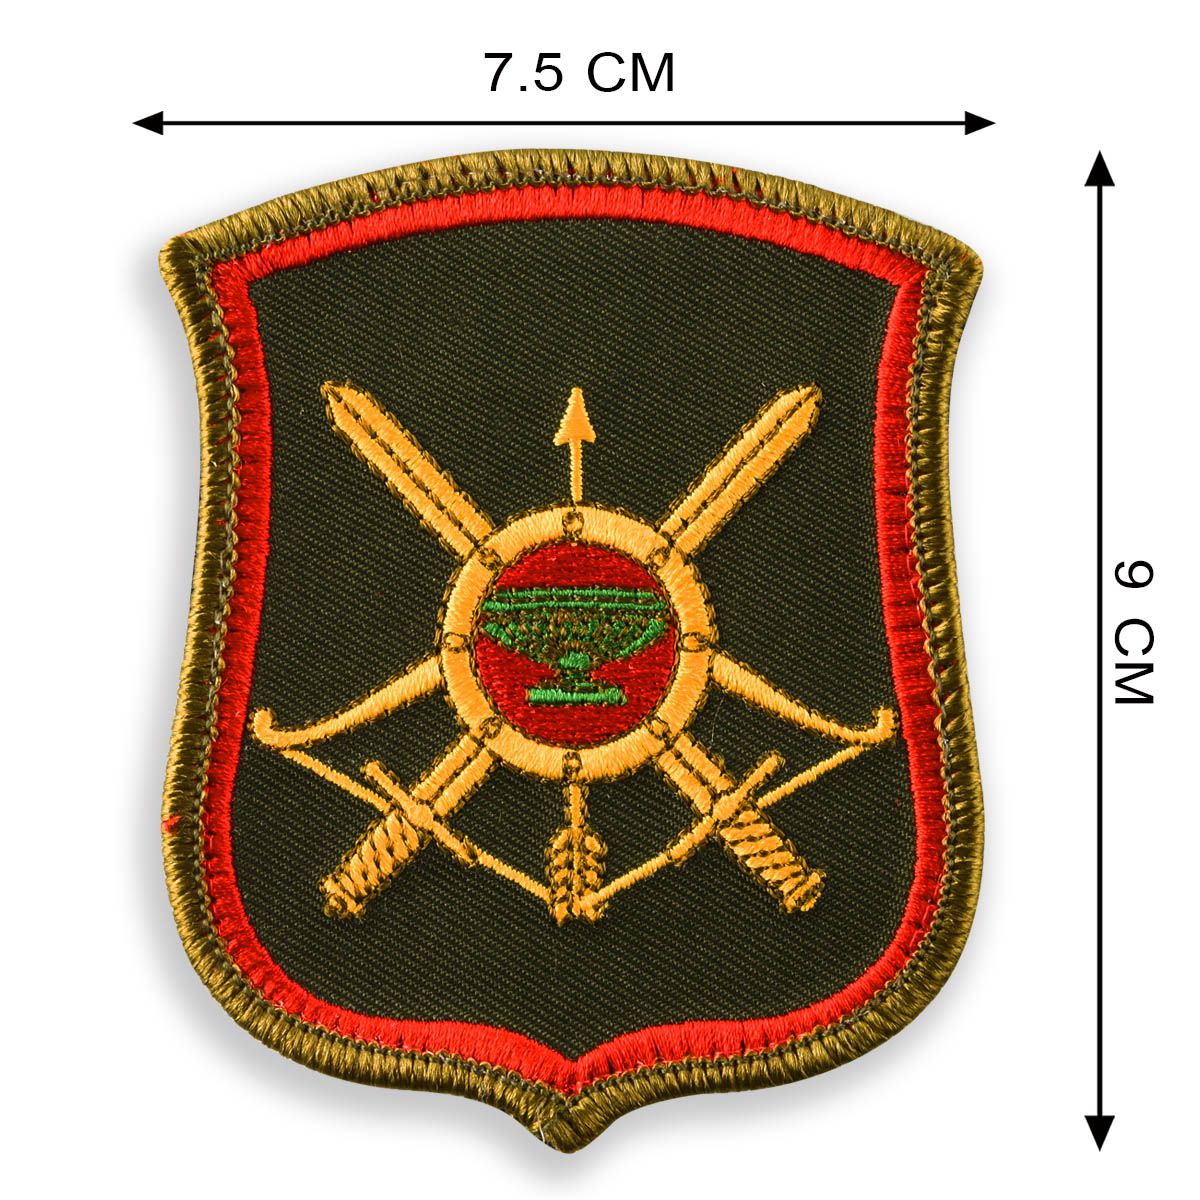 Шеврон 35-ой ракетной дивизии РВСН 